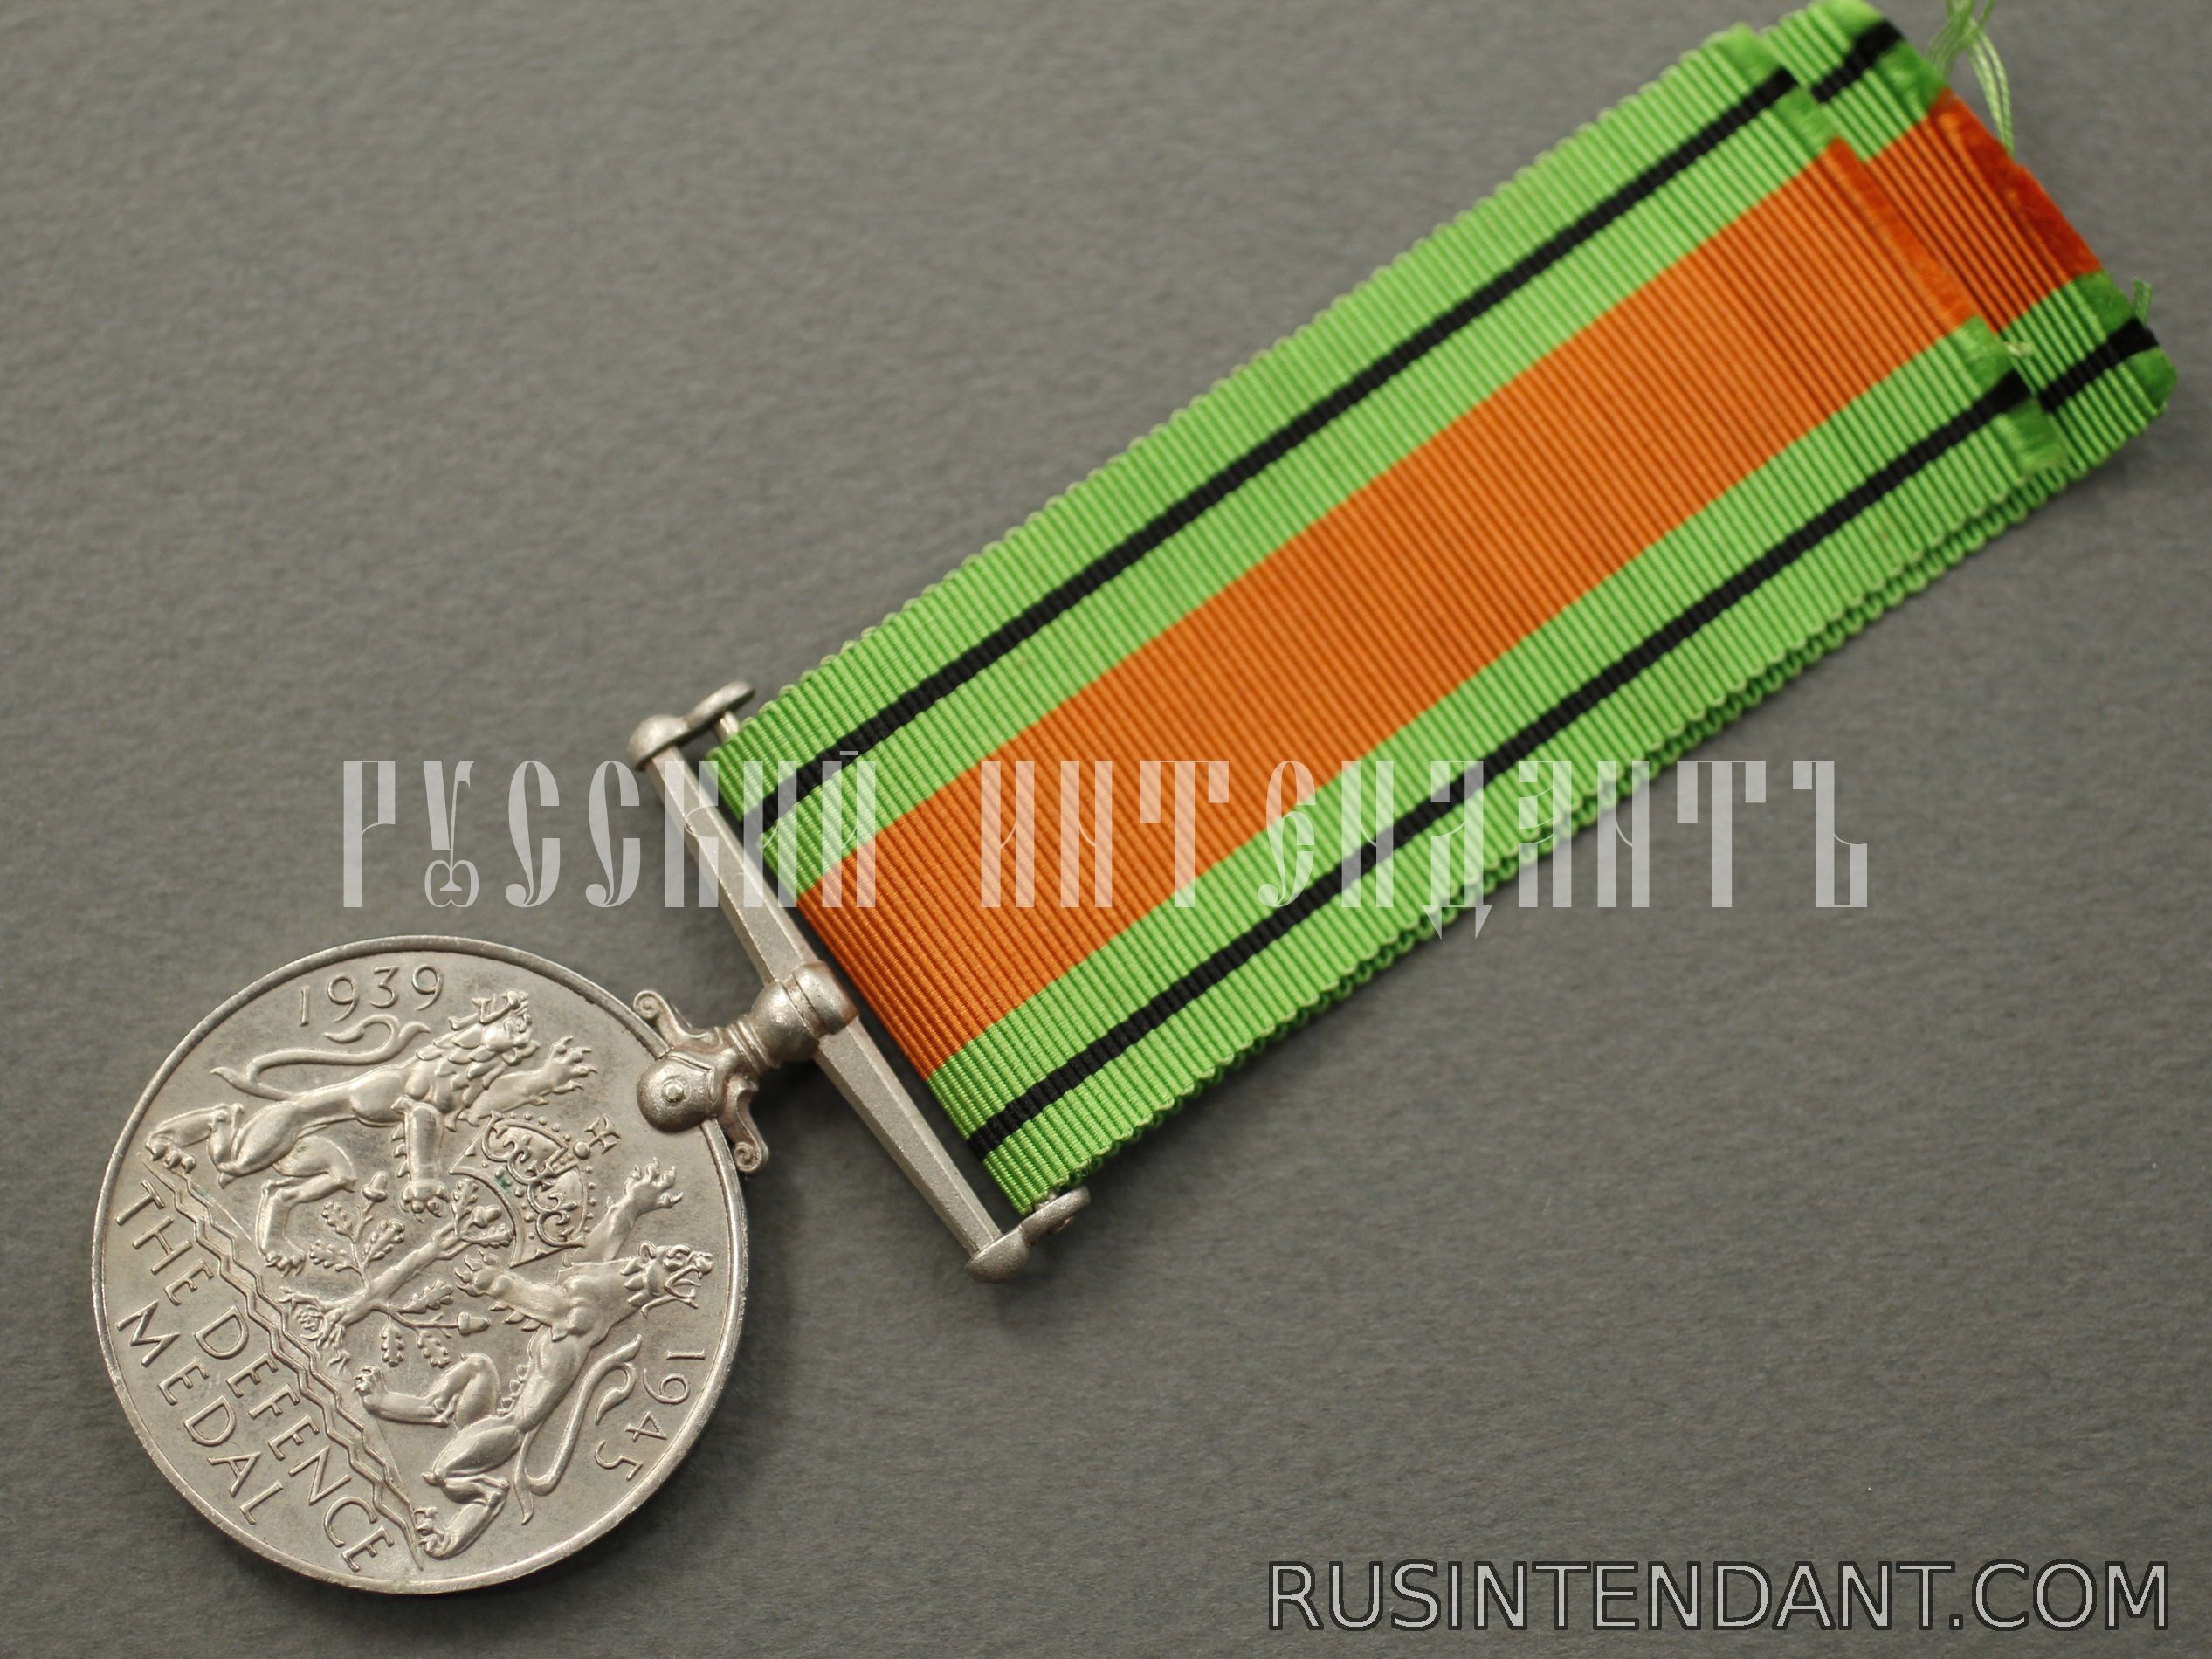 Фото 4: Английская медаль "За оборону" 